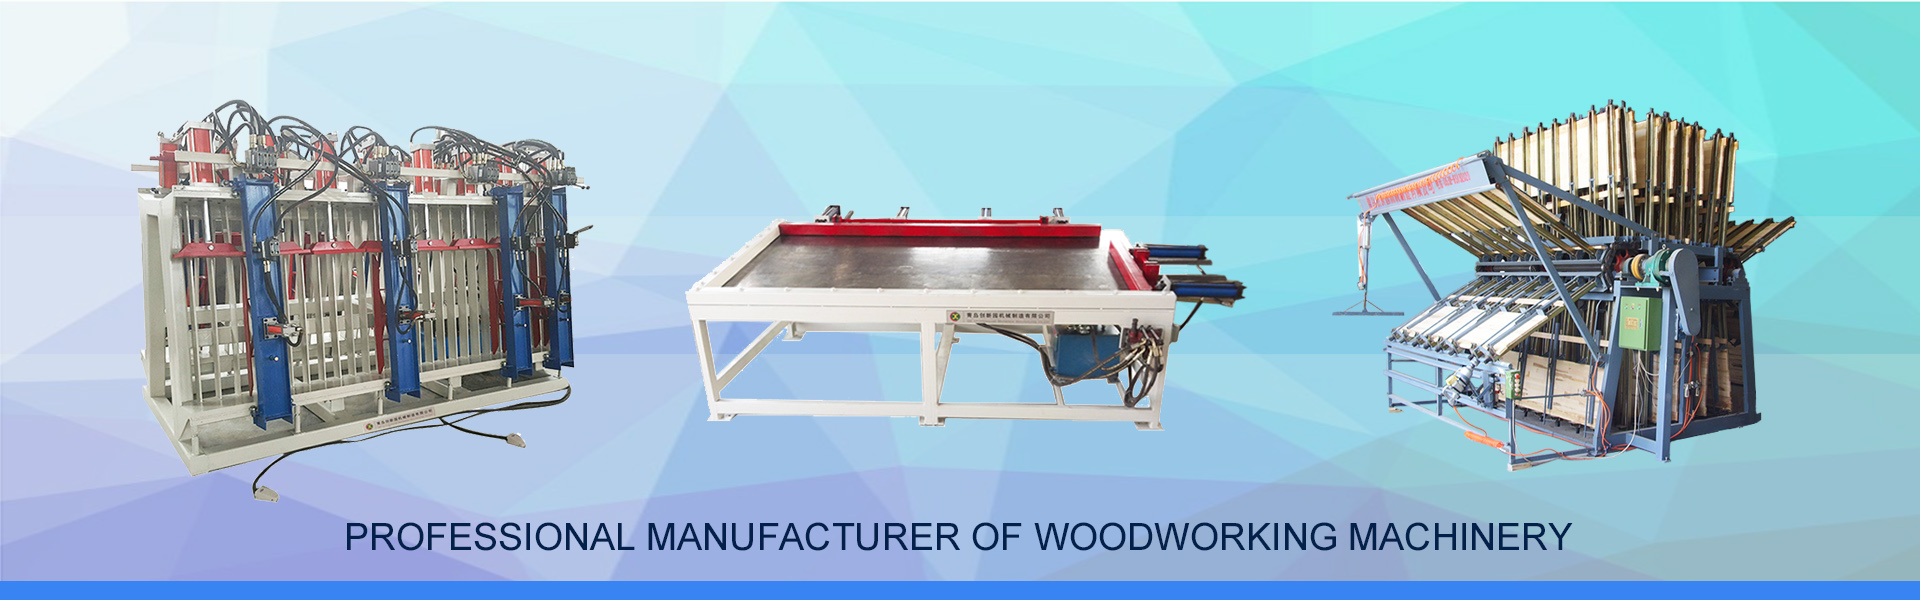 木工機械、油圧クランプキャリア、パネルソー,QINGDAO CHUANGXINYUAN MACHINERY MANUFACTURING CO.,LTD